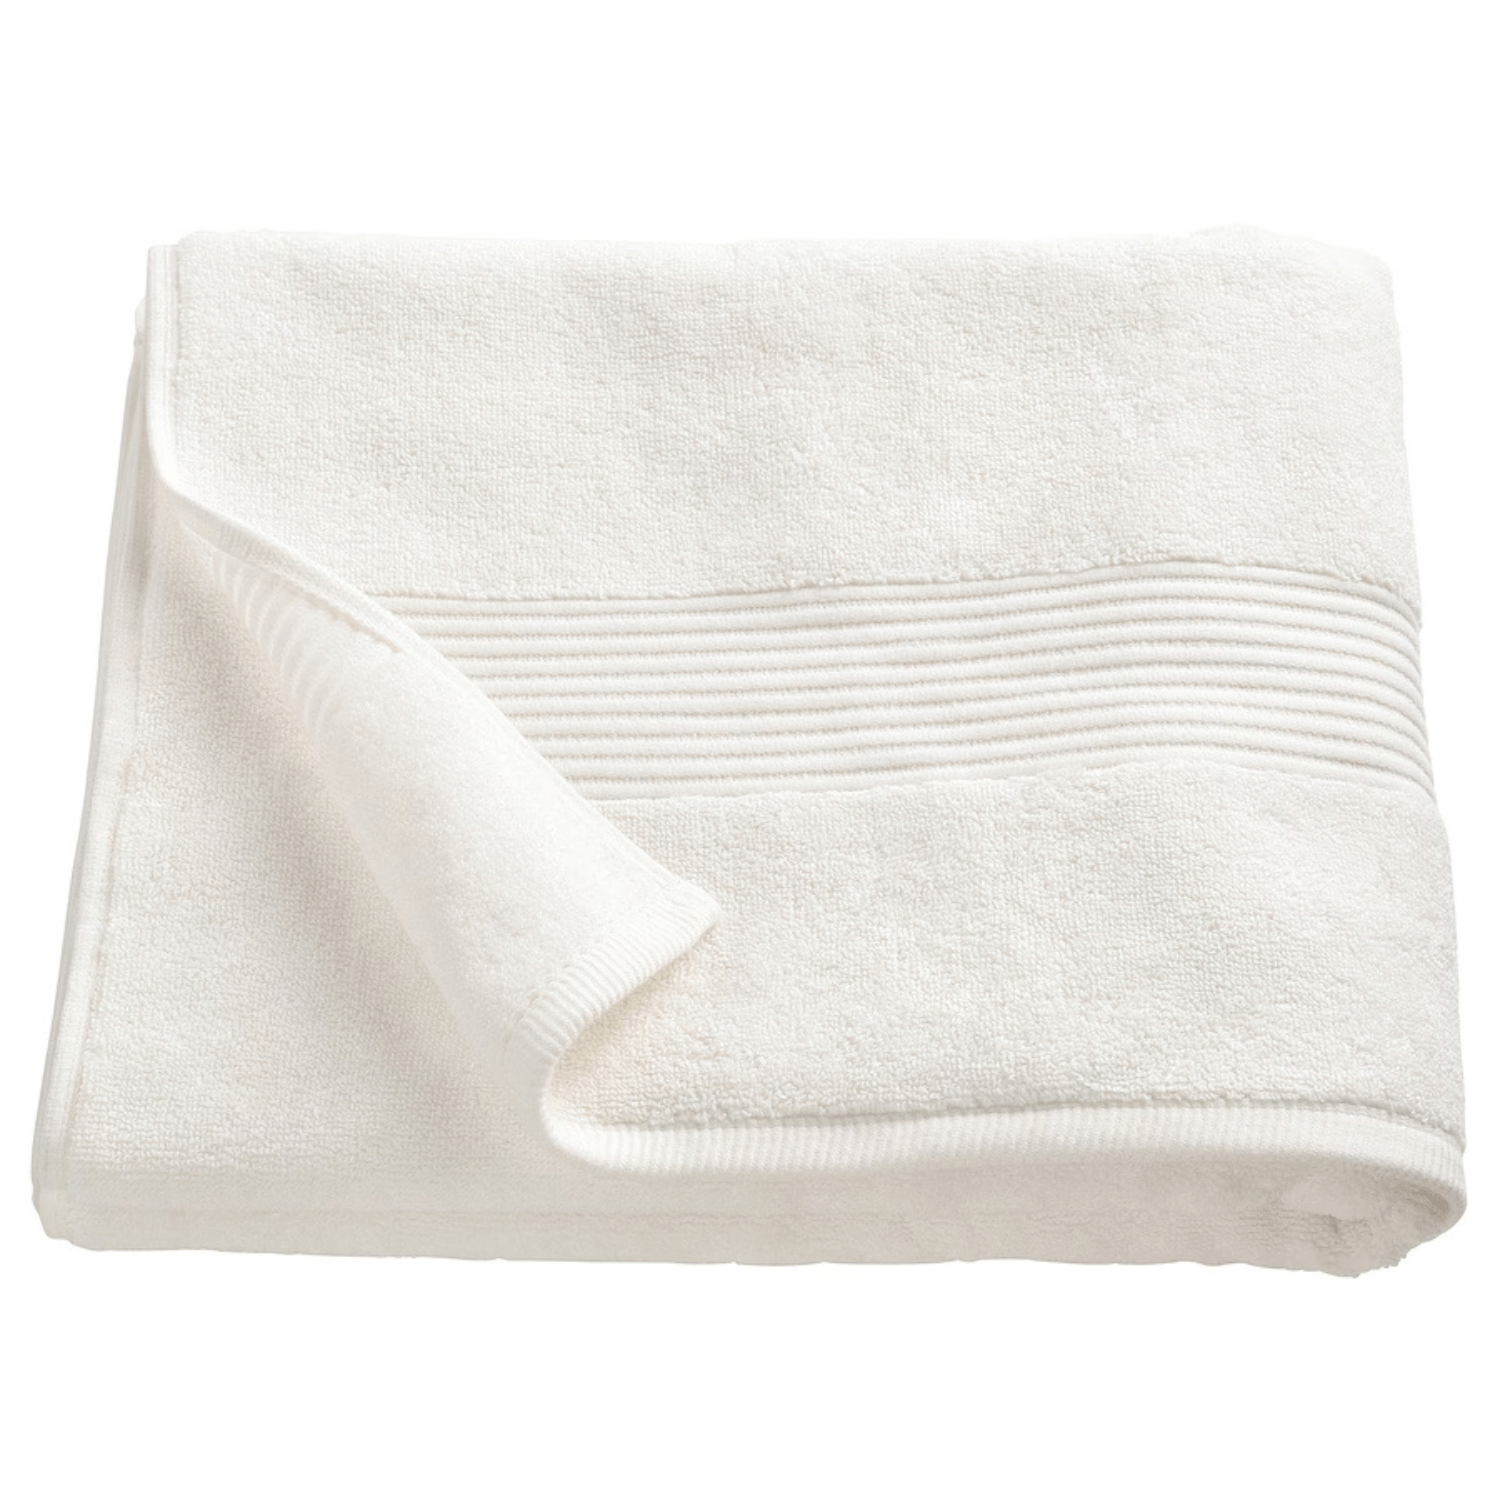 Premium cotton bath towel by Bedlam